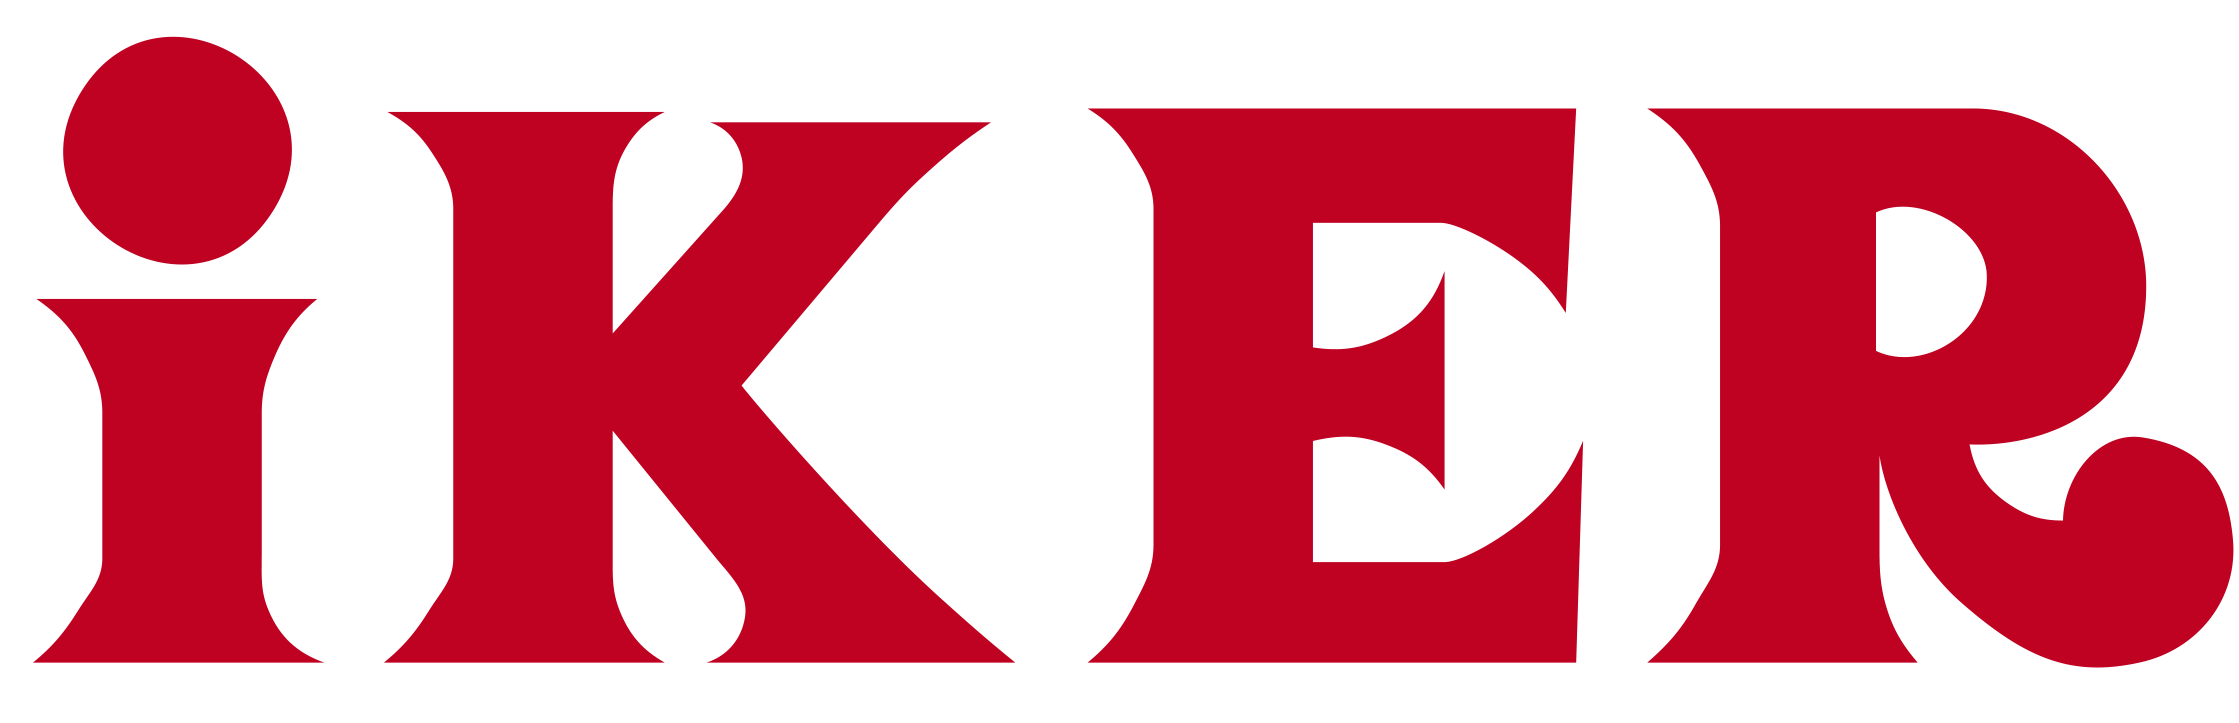 IKER BAÑOS logo